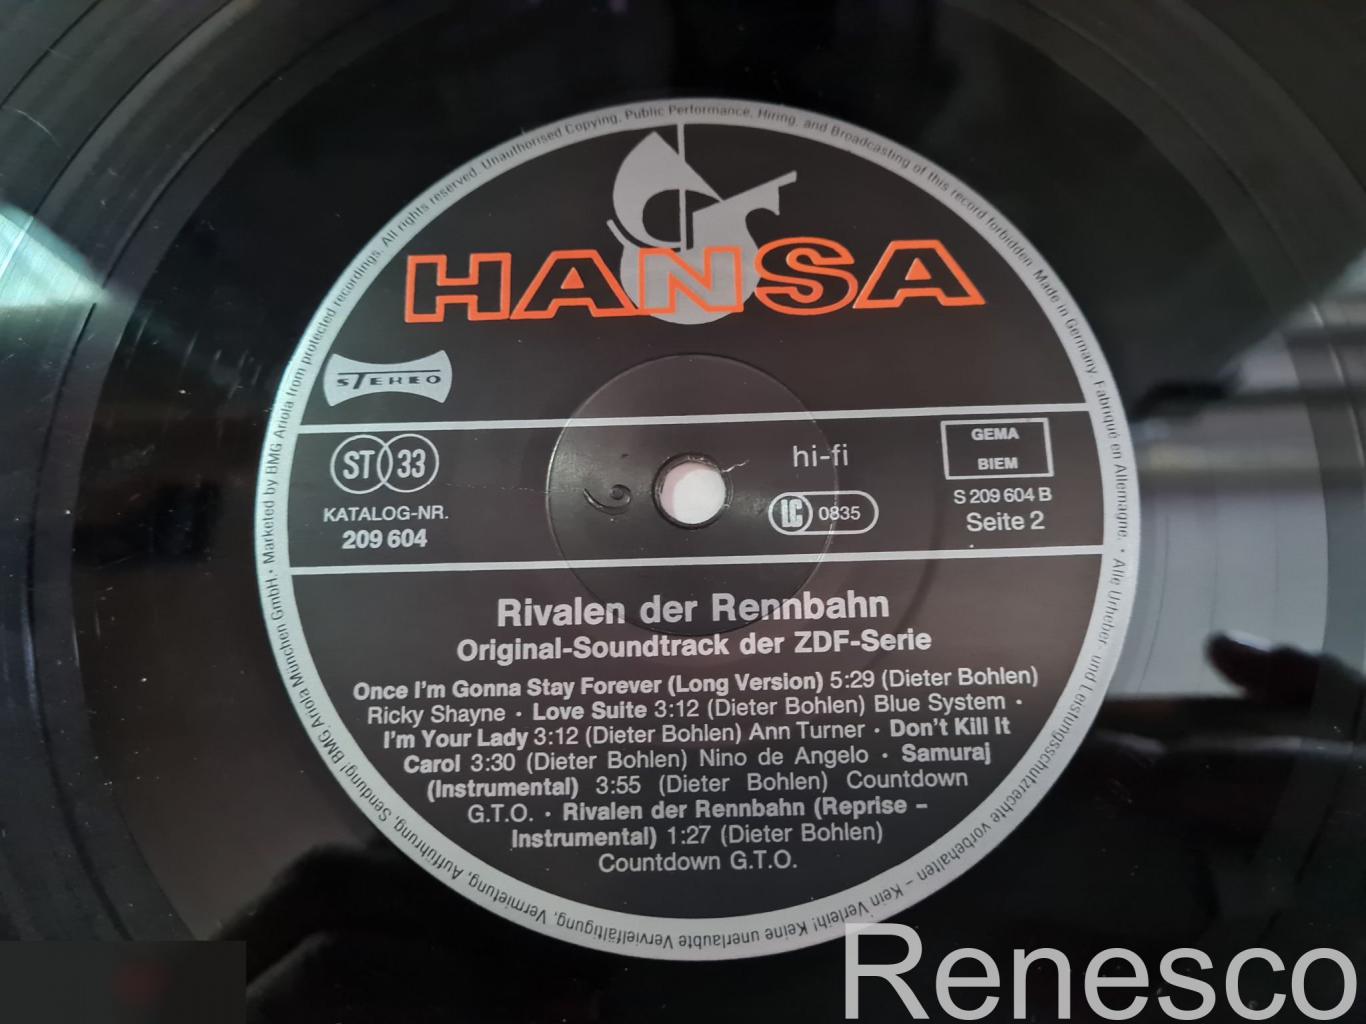 Rivalen Der Rennbahn (Original-Soundtrack Der ZDF-Serie) (Germany) (1989) 2